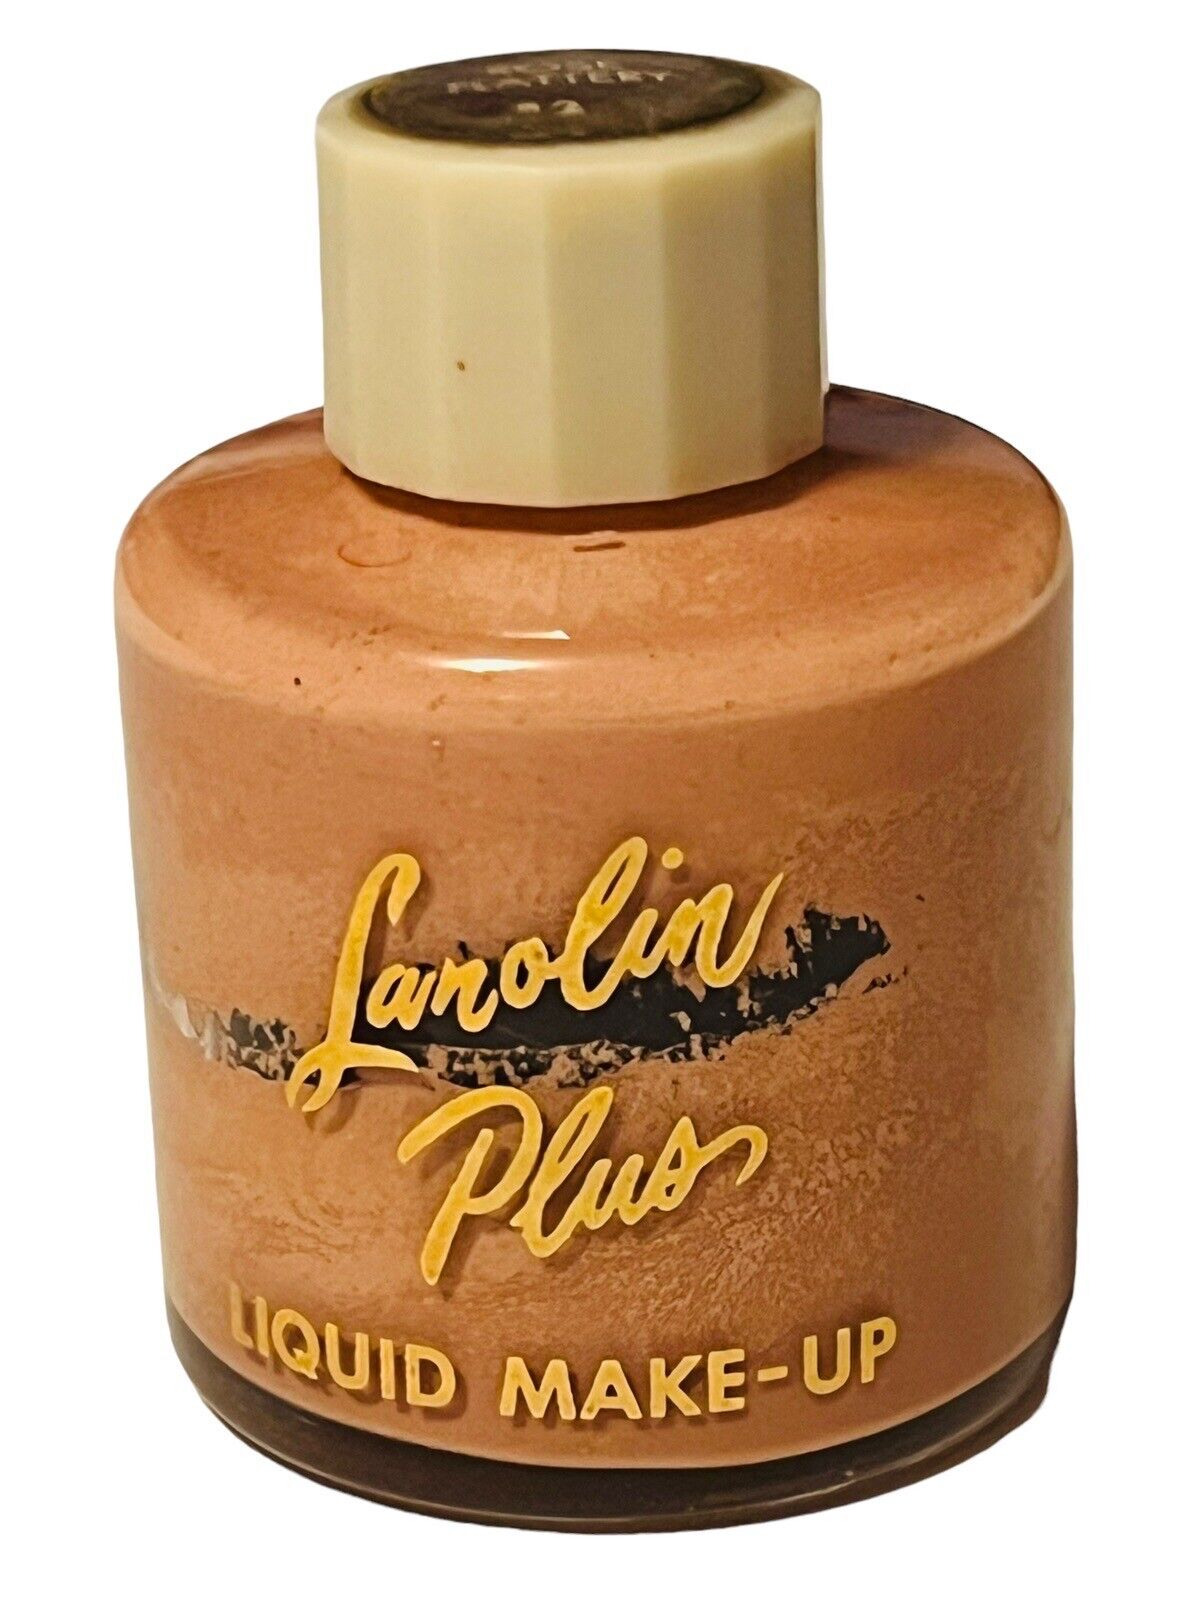 Vintage Lanolin Plus Liquid Make-Up 2 Oz. Rose Flattery #3